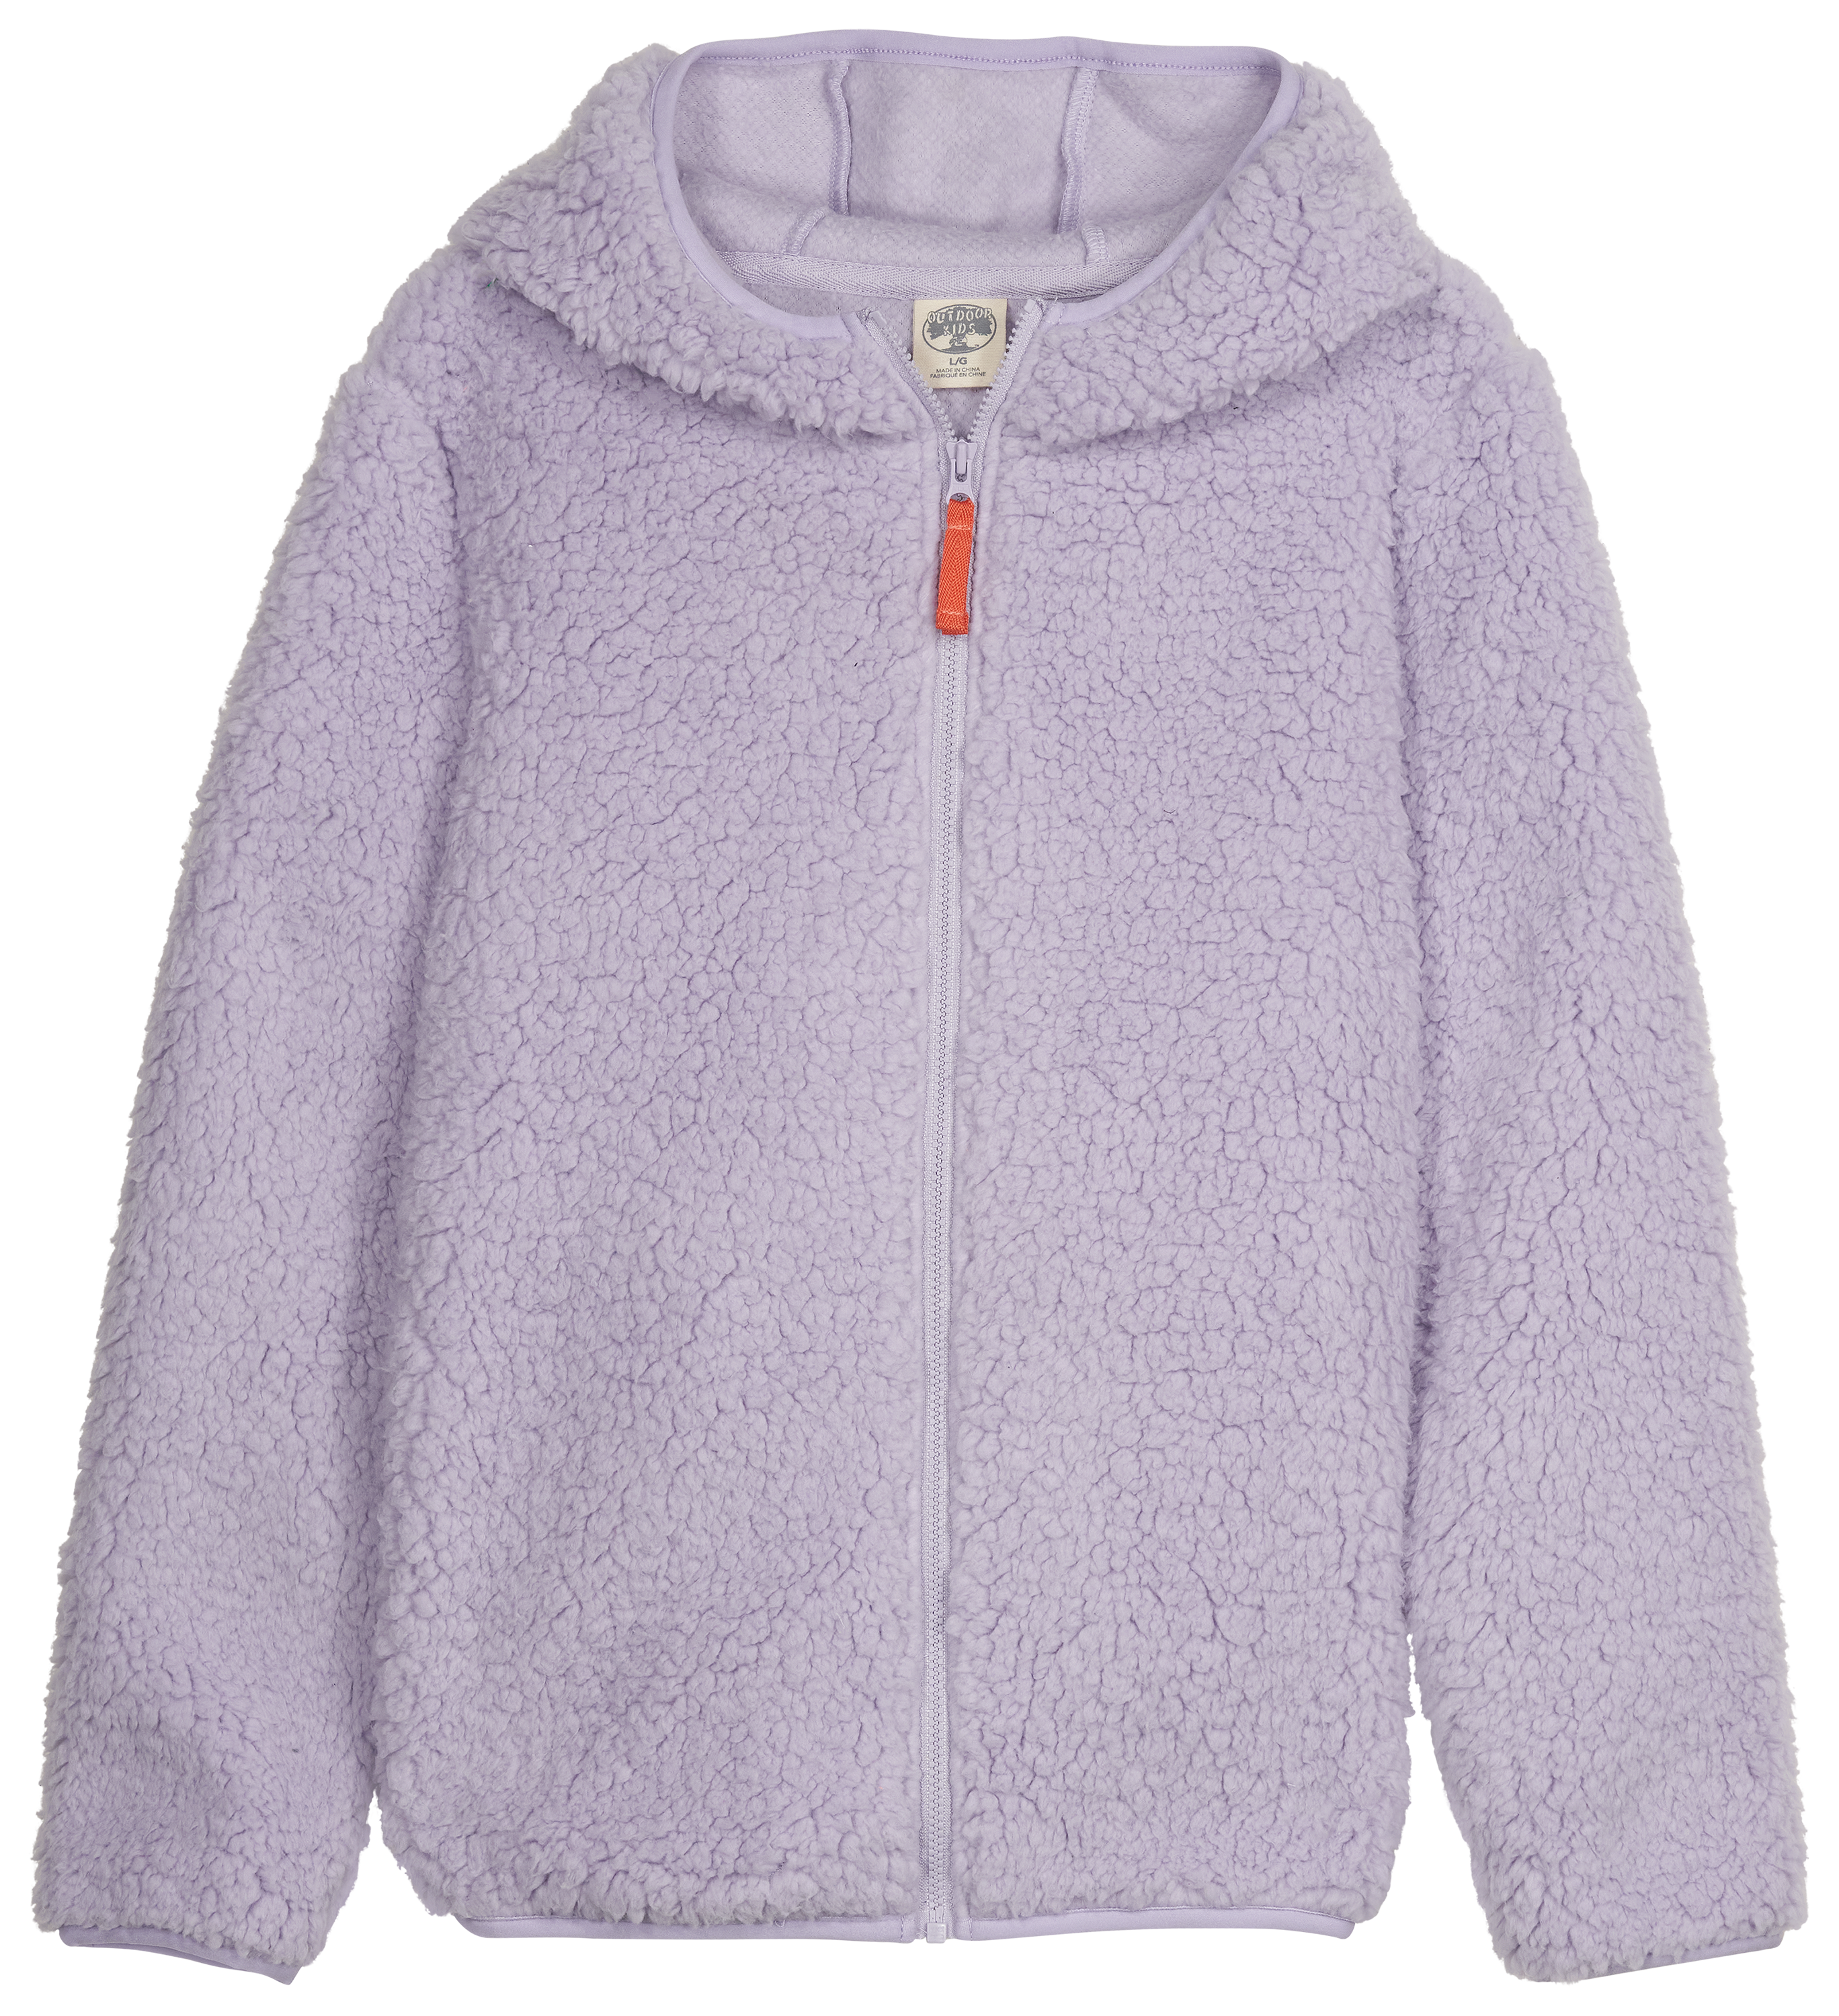 Outdoor Kids Cozy Fleece Full-Zip Hoodie for Kids - Lavender - XL